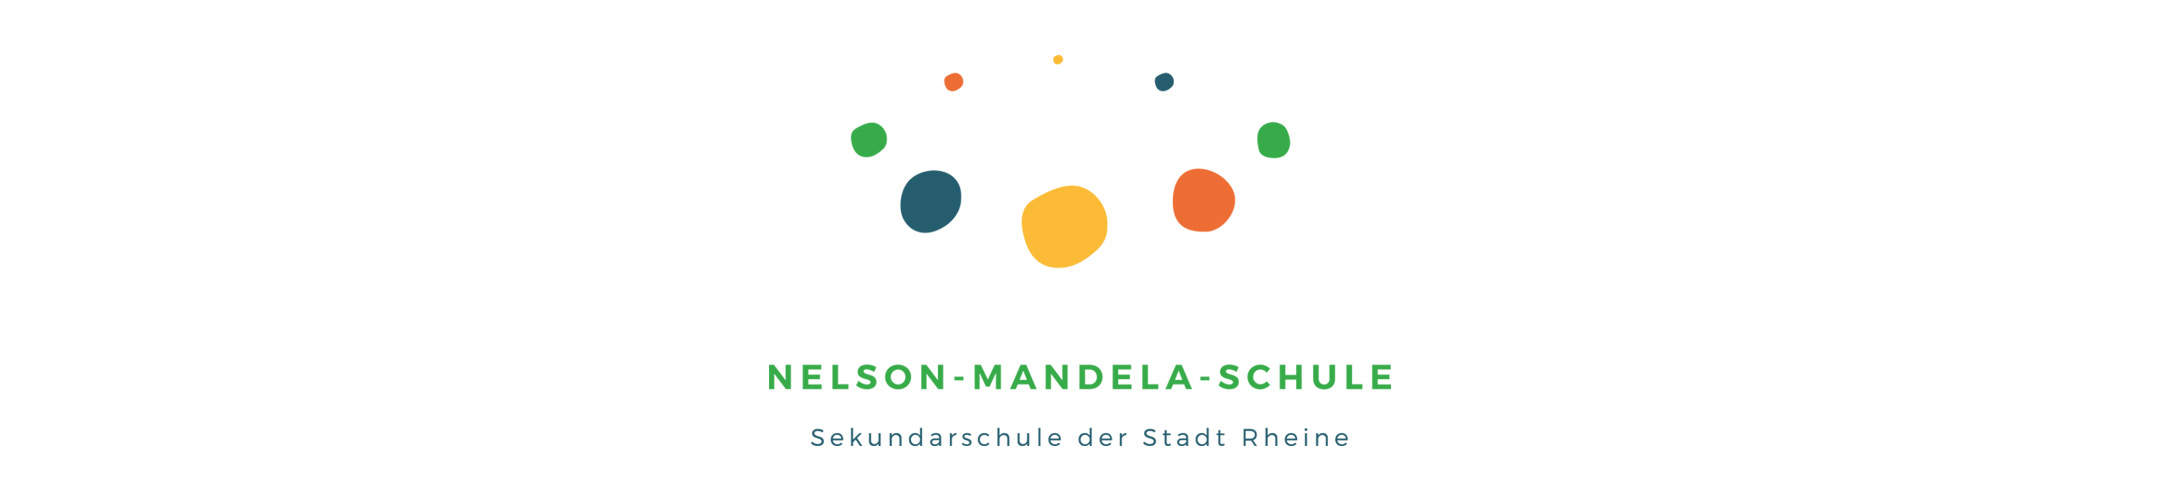 Nelson-Mandela-Schule Rheine